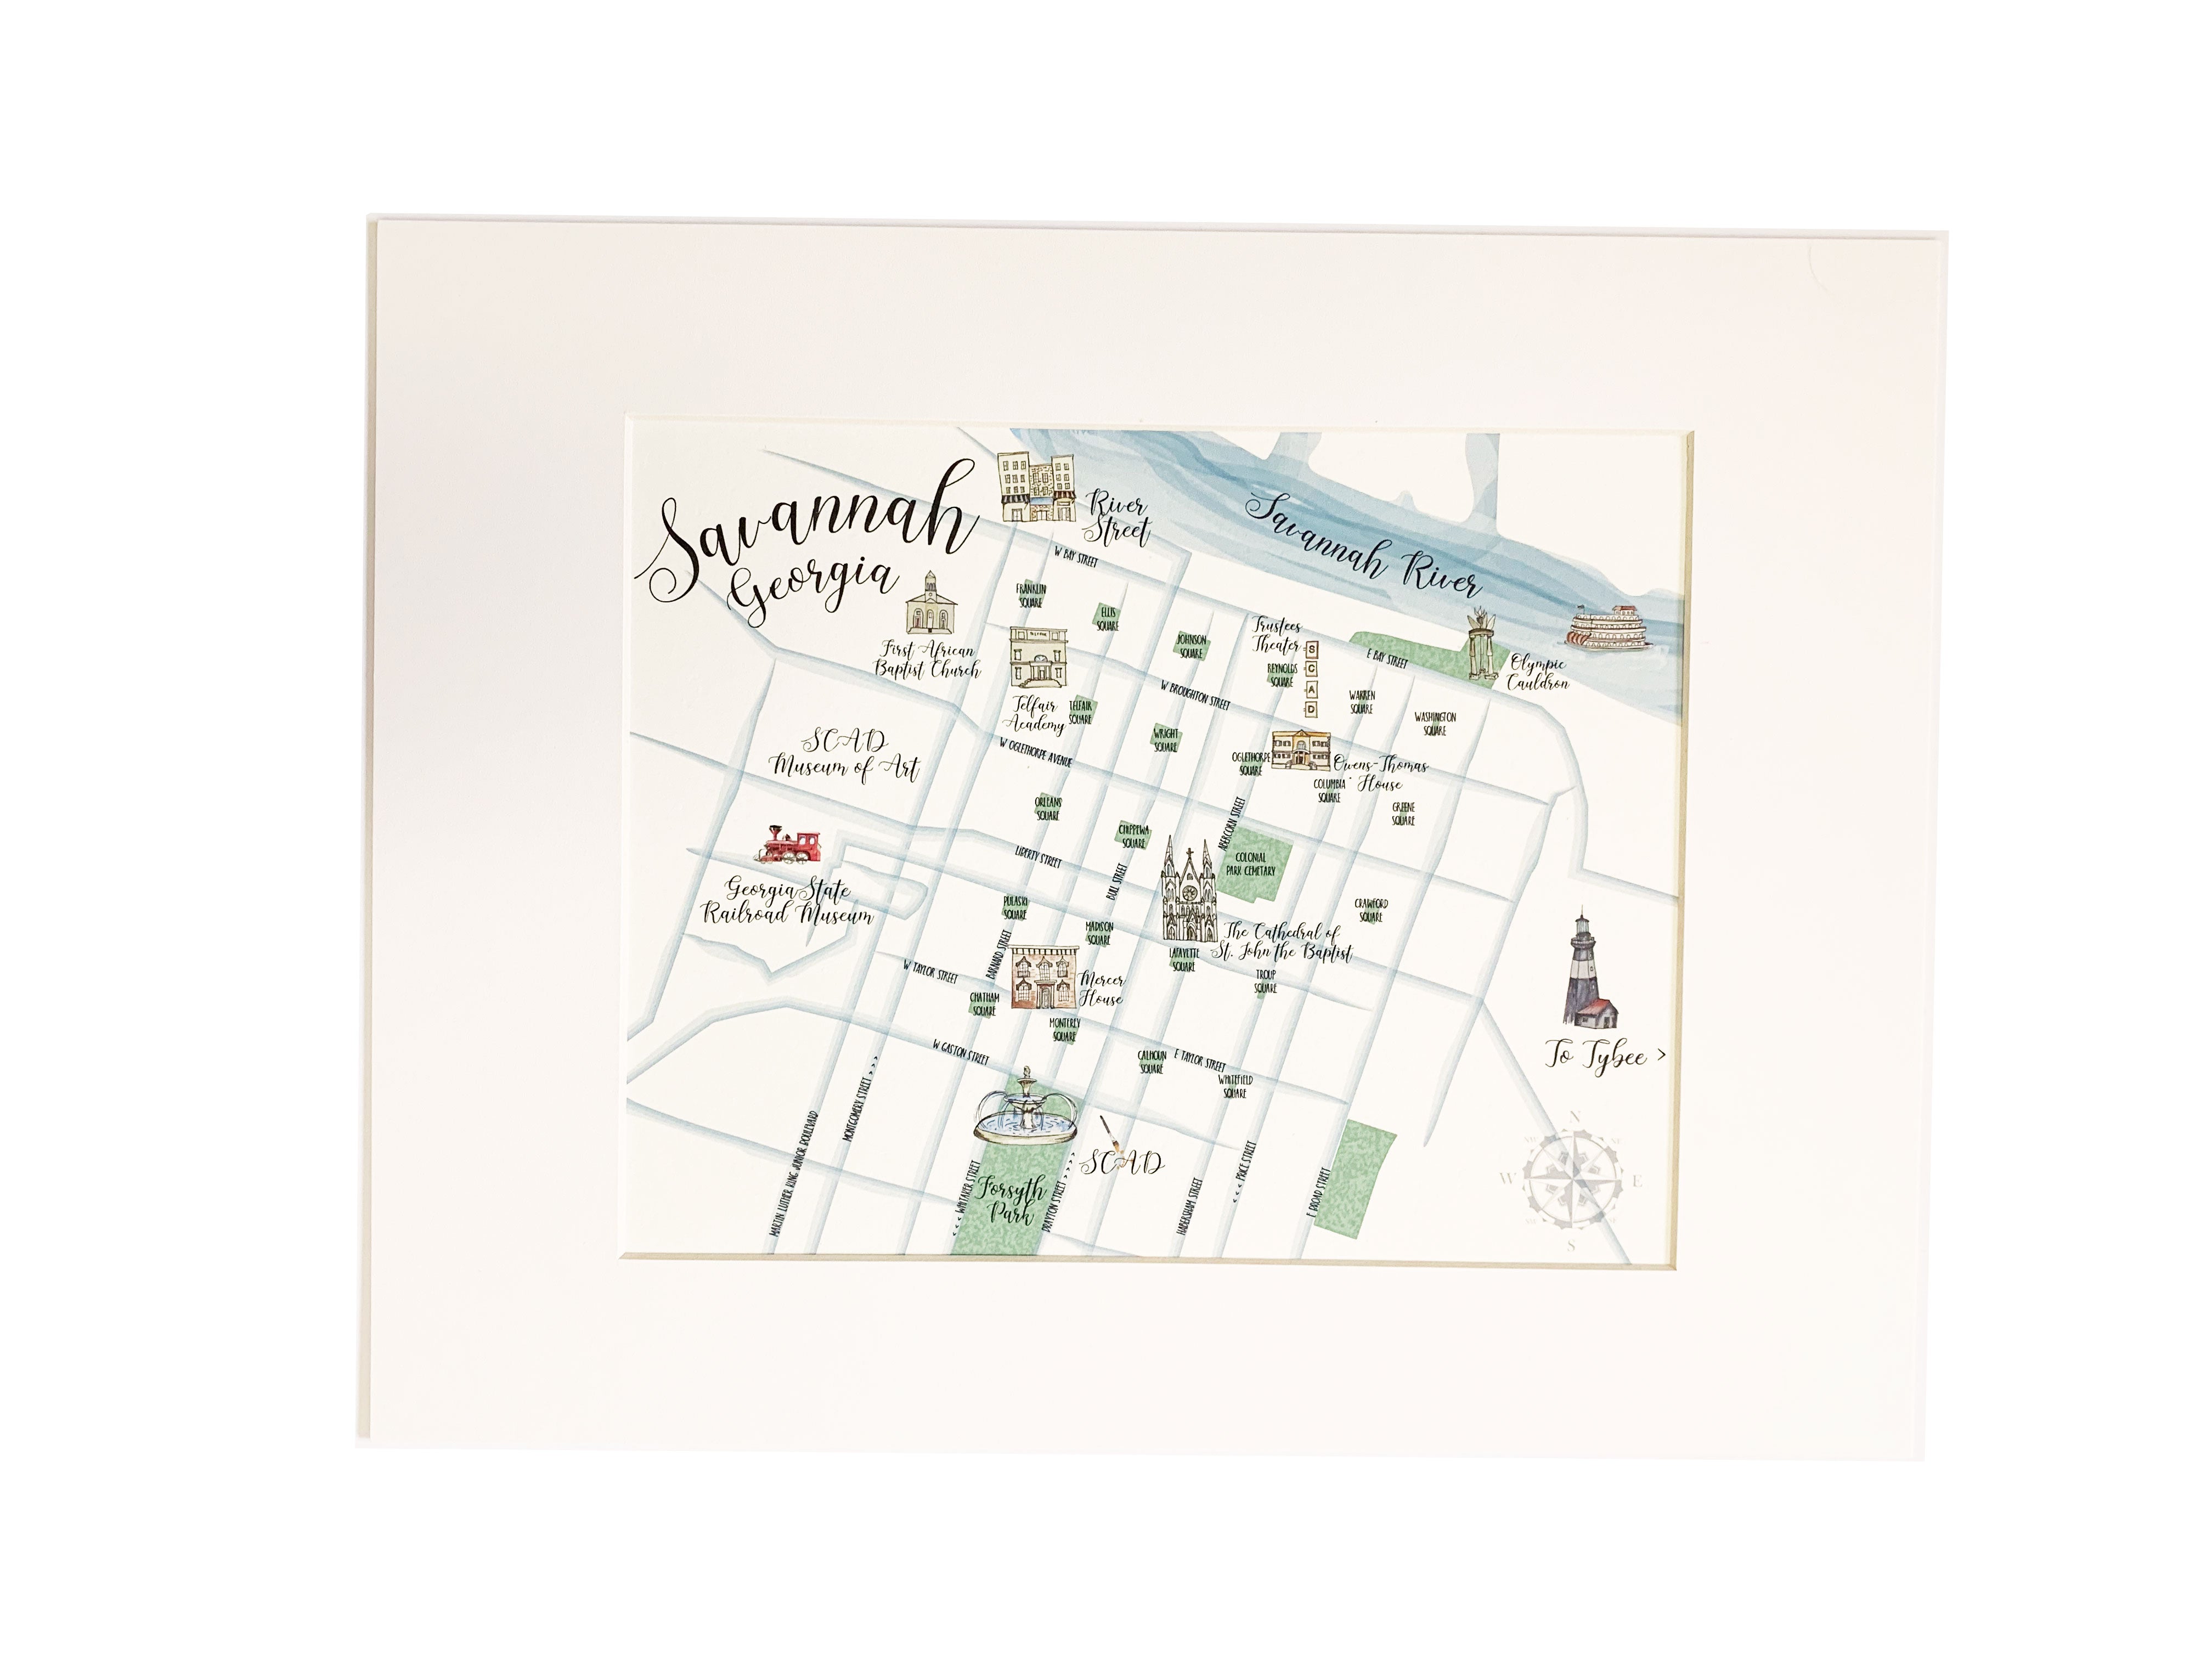 Travel inspired art - watercolor map of Savannah, GA.